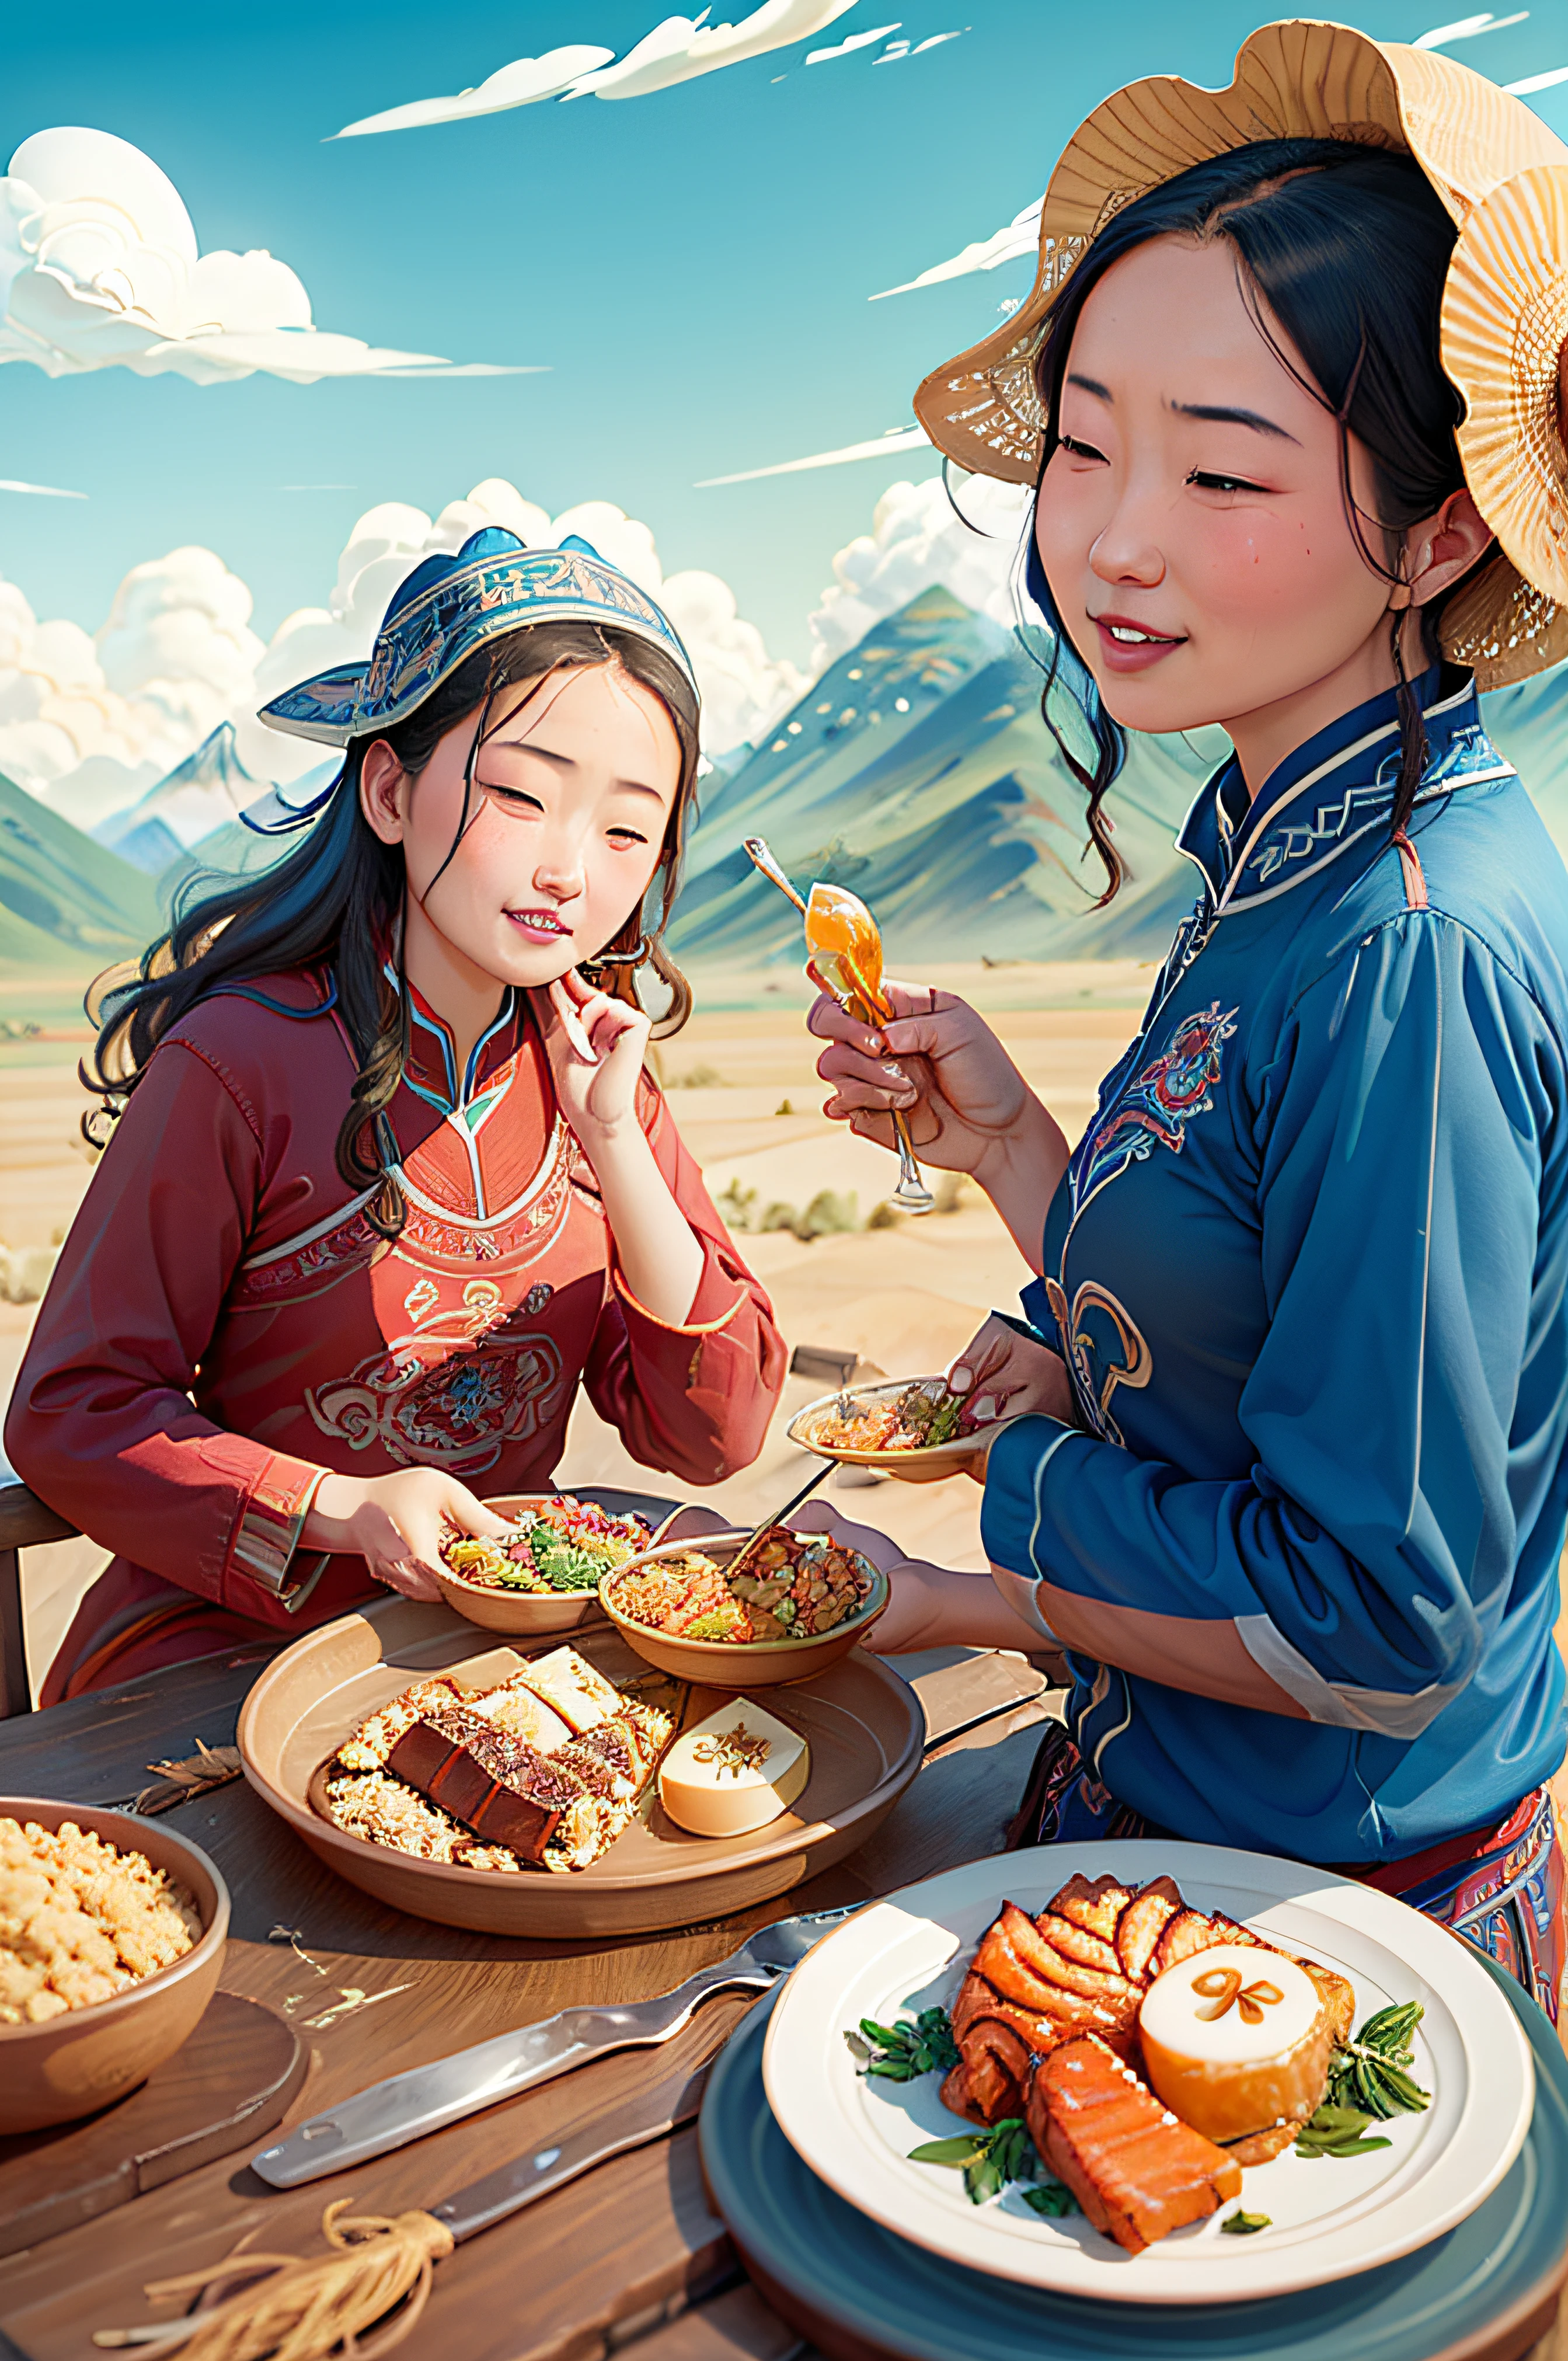 蒙古女孩在草原上开心地吃饭，旁边是一群羊，蓝天白云